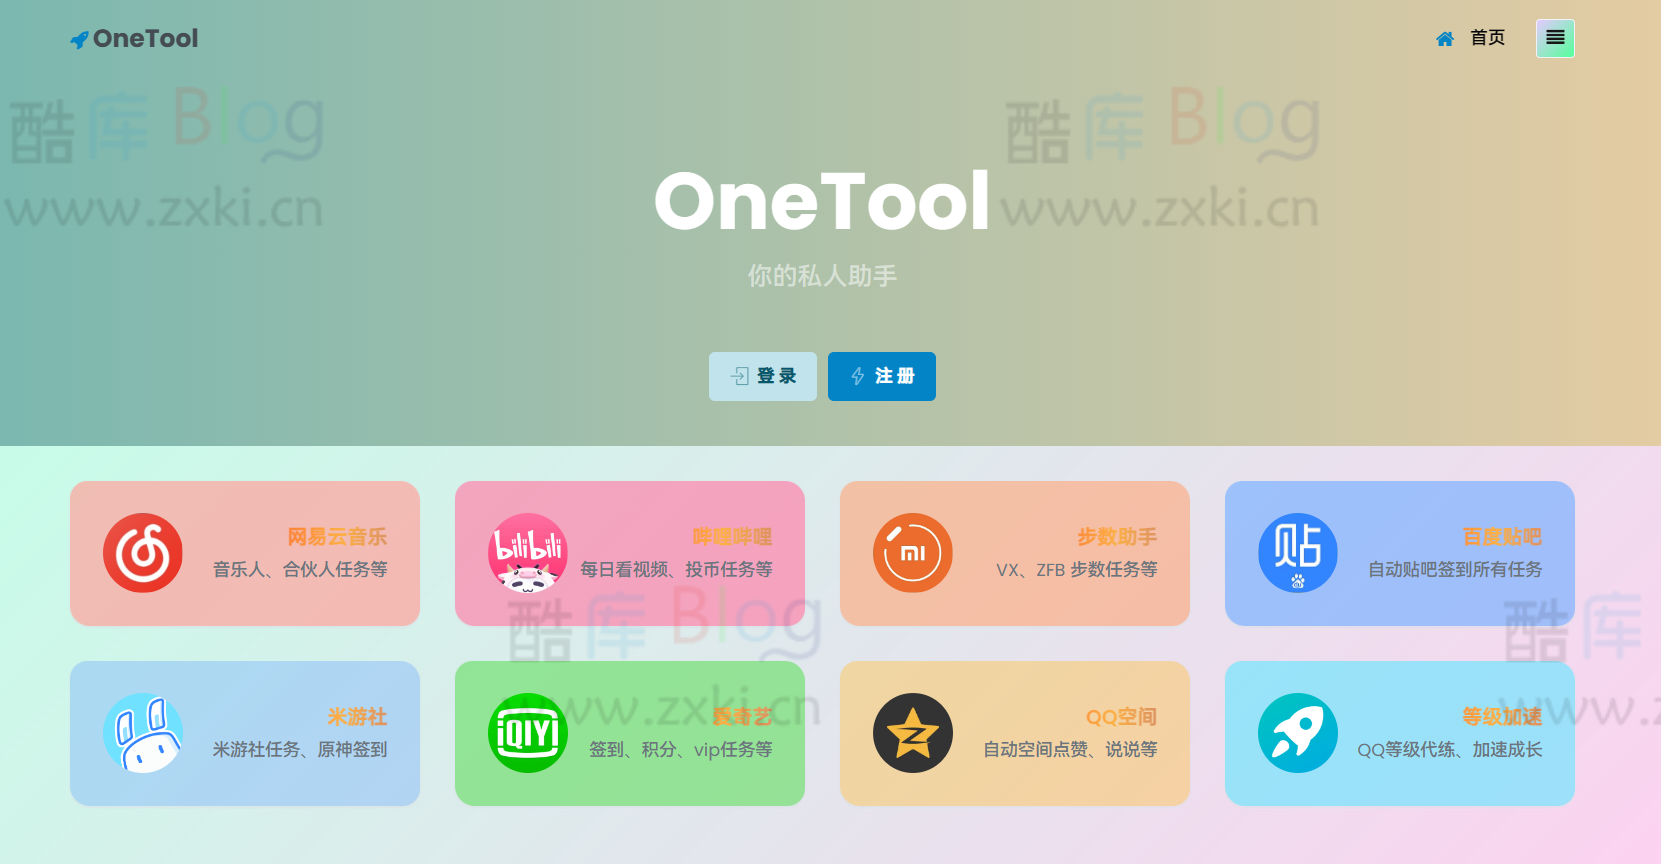 最新OneTool 十一合一多平台助手开心可用版源码 第3张插图